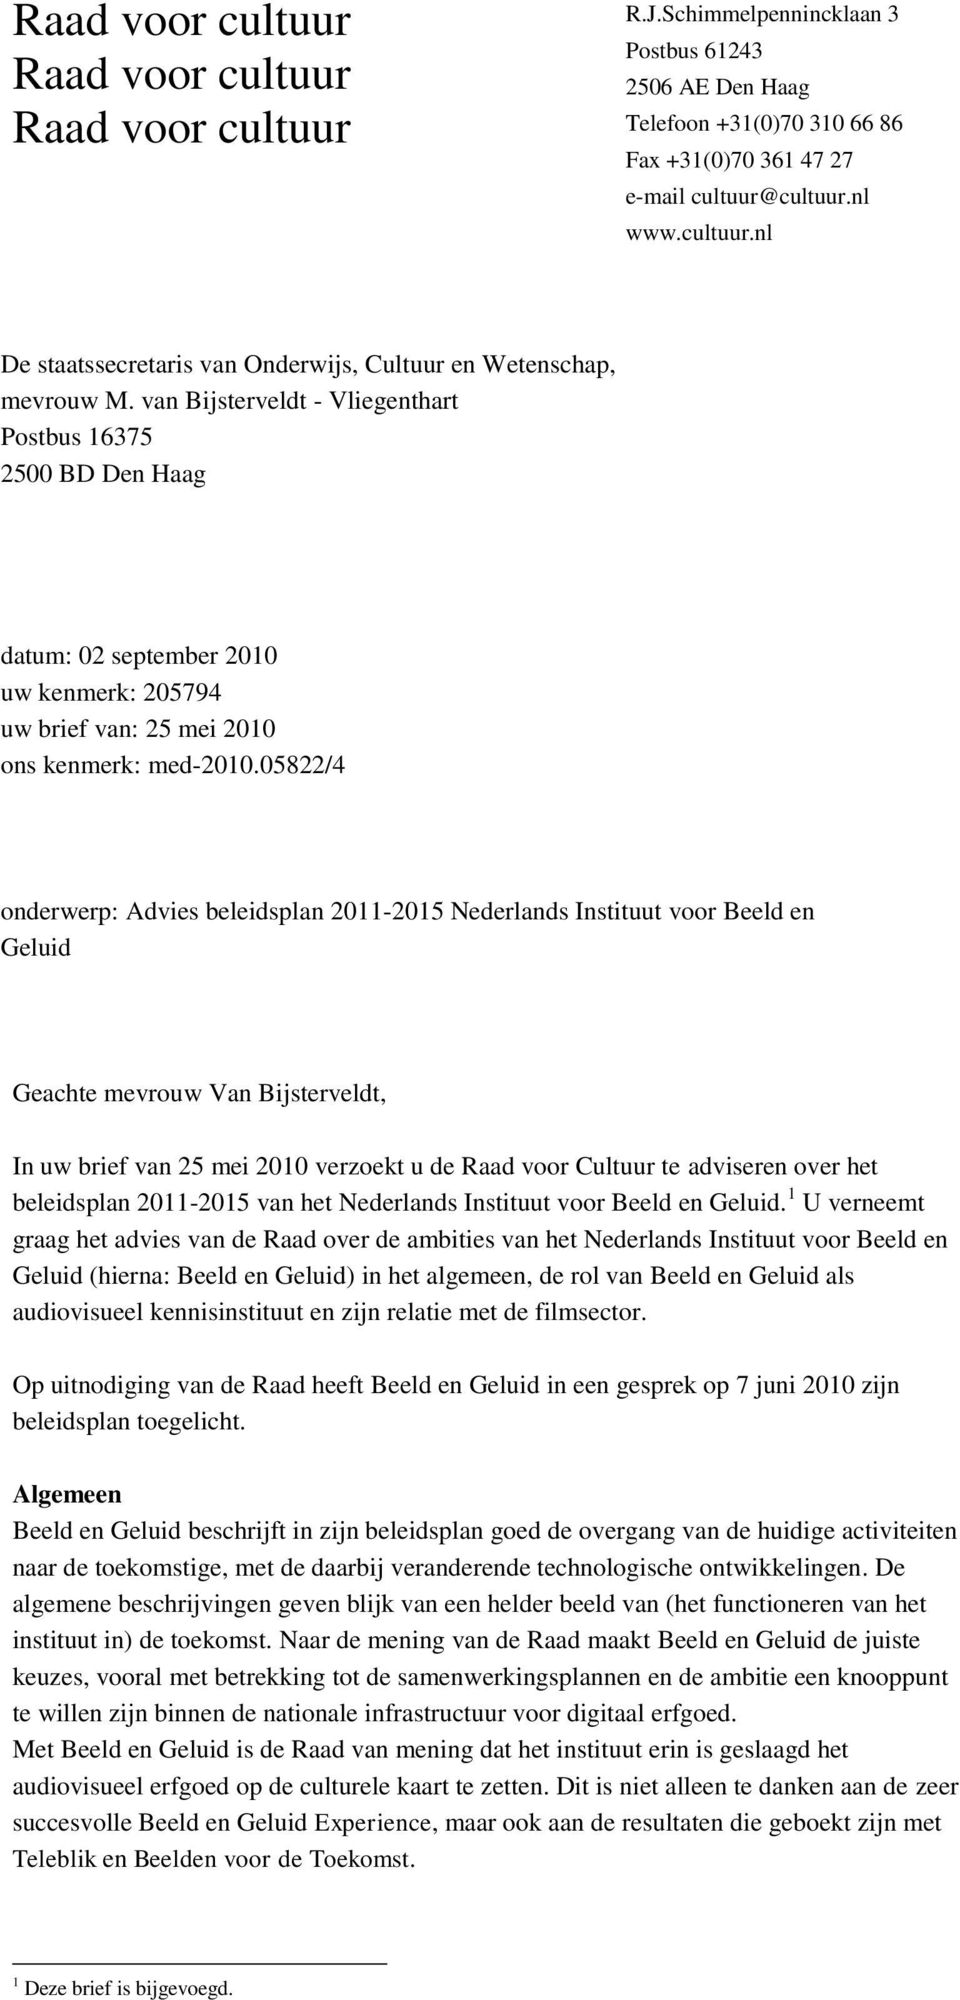 Instituut voor Beeld en Geluid Geachte mevrouw Van Bijsterveldt, In uw brief van 25 mei 2010 verzoekt u de Raad voor Cultuur te adviseren over het beleidsplan 2011-2015 van het Nederlands Instituut